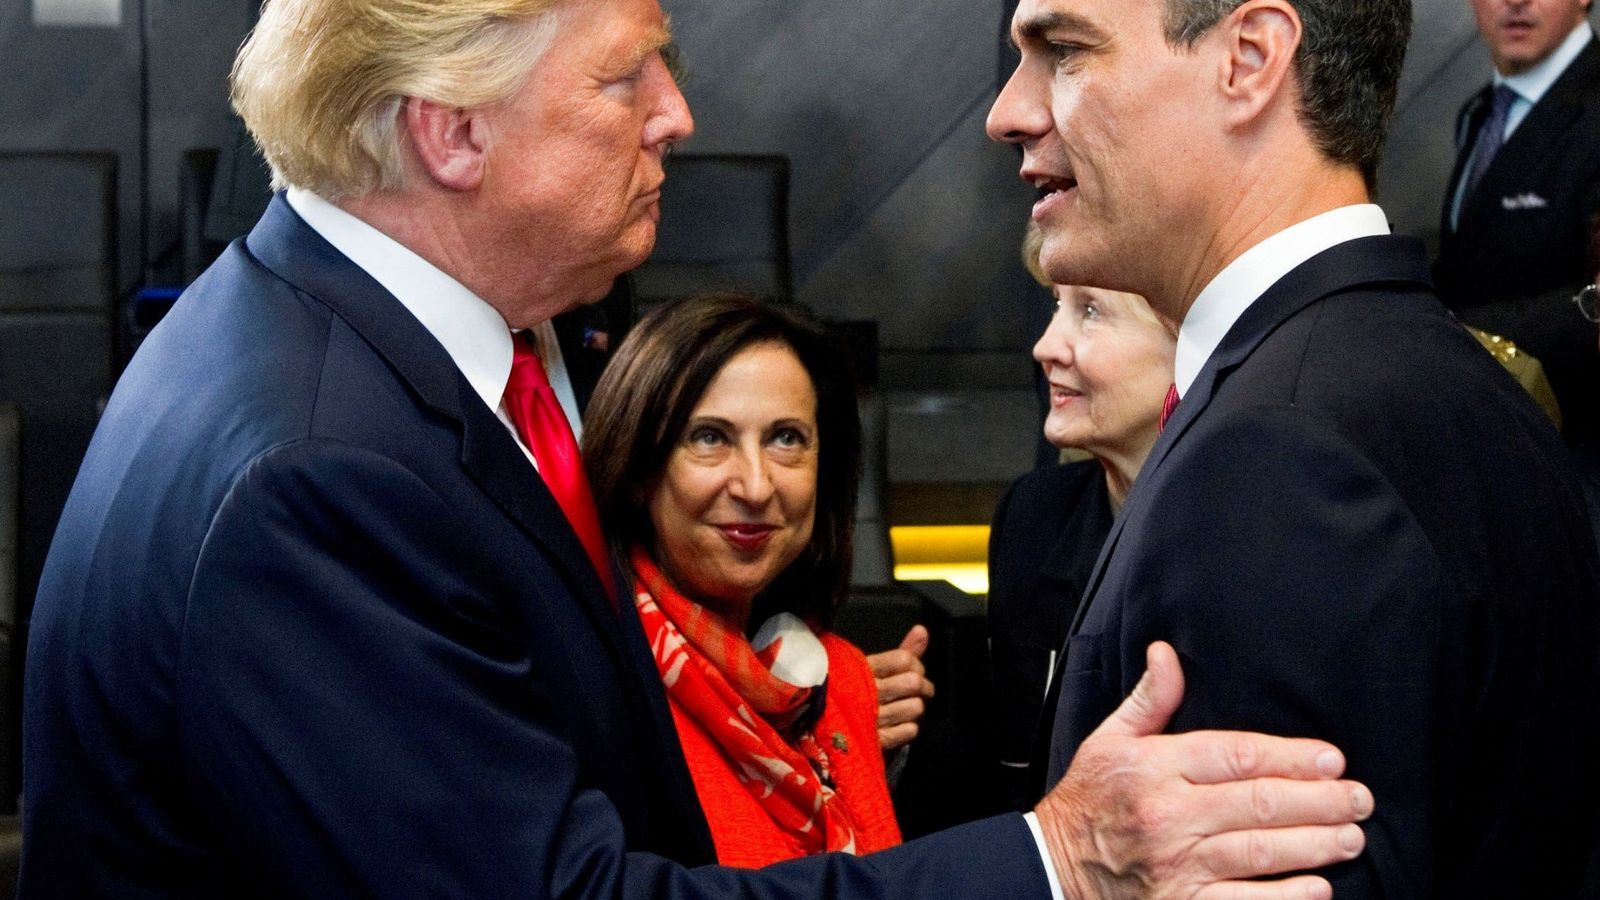 Foto: El jefe del Gobierno español, Pedro Sánchez, y el presidente de Estados Unidos, Donald Trump, se saludan por primera vez en julio de 2018. (EFE)